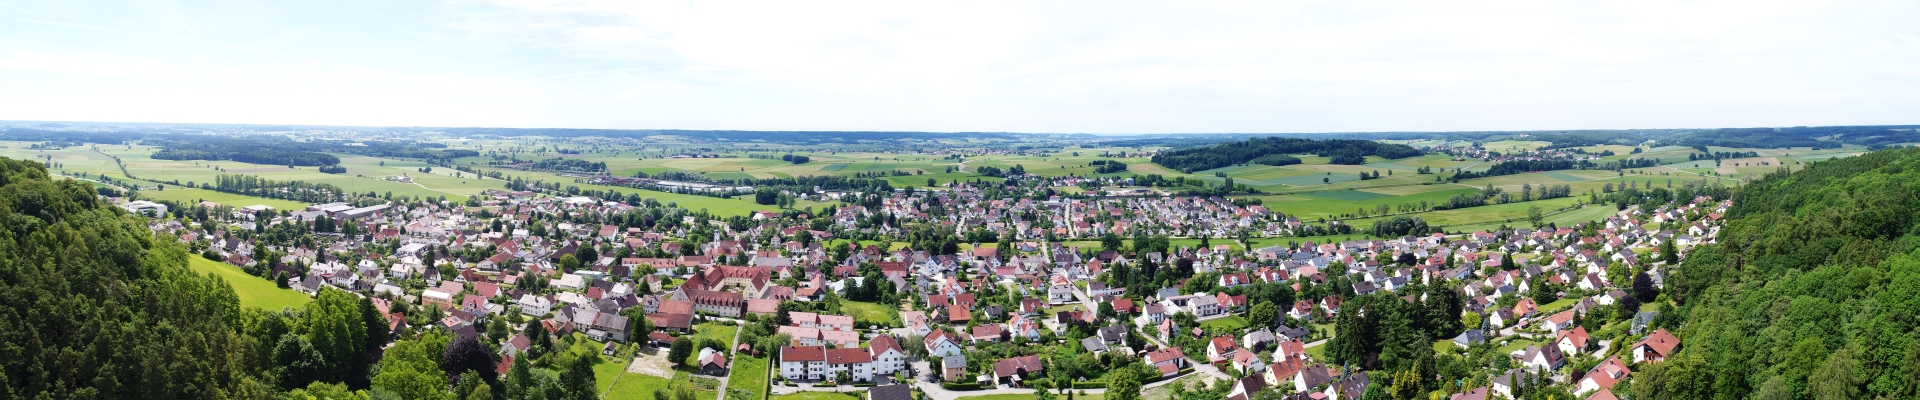 Panorama_Dinkelscherben20170717 .jpg